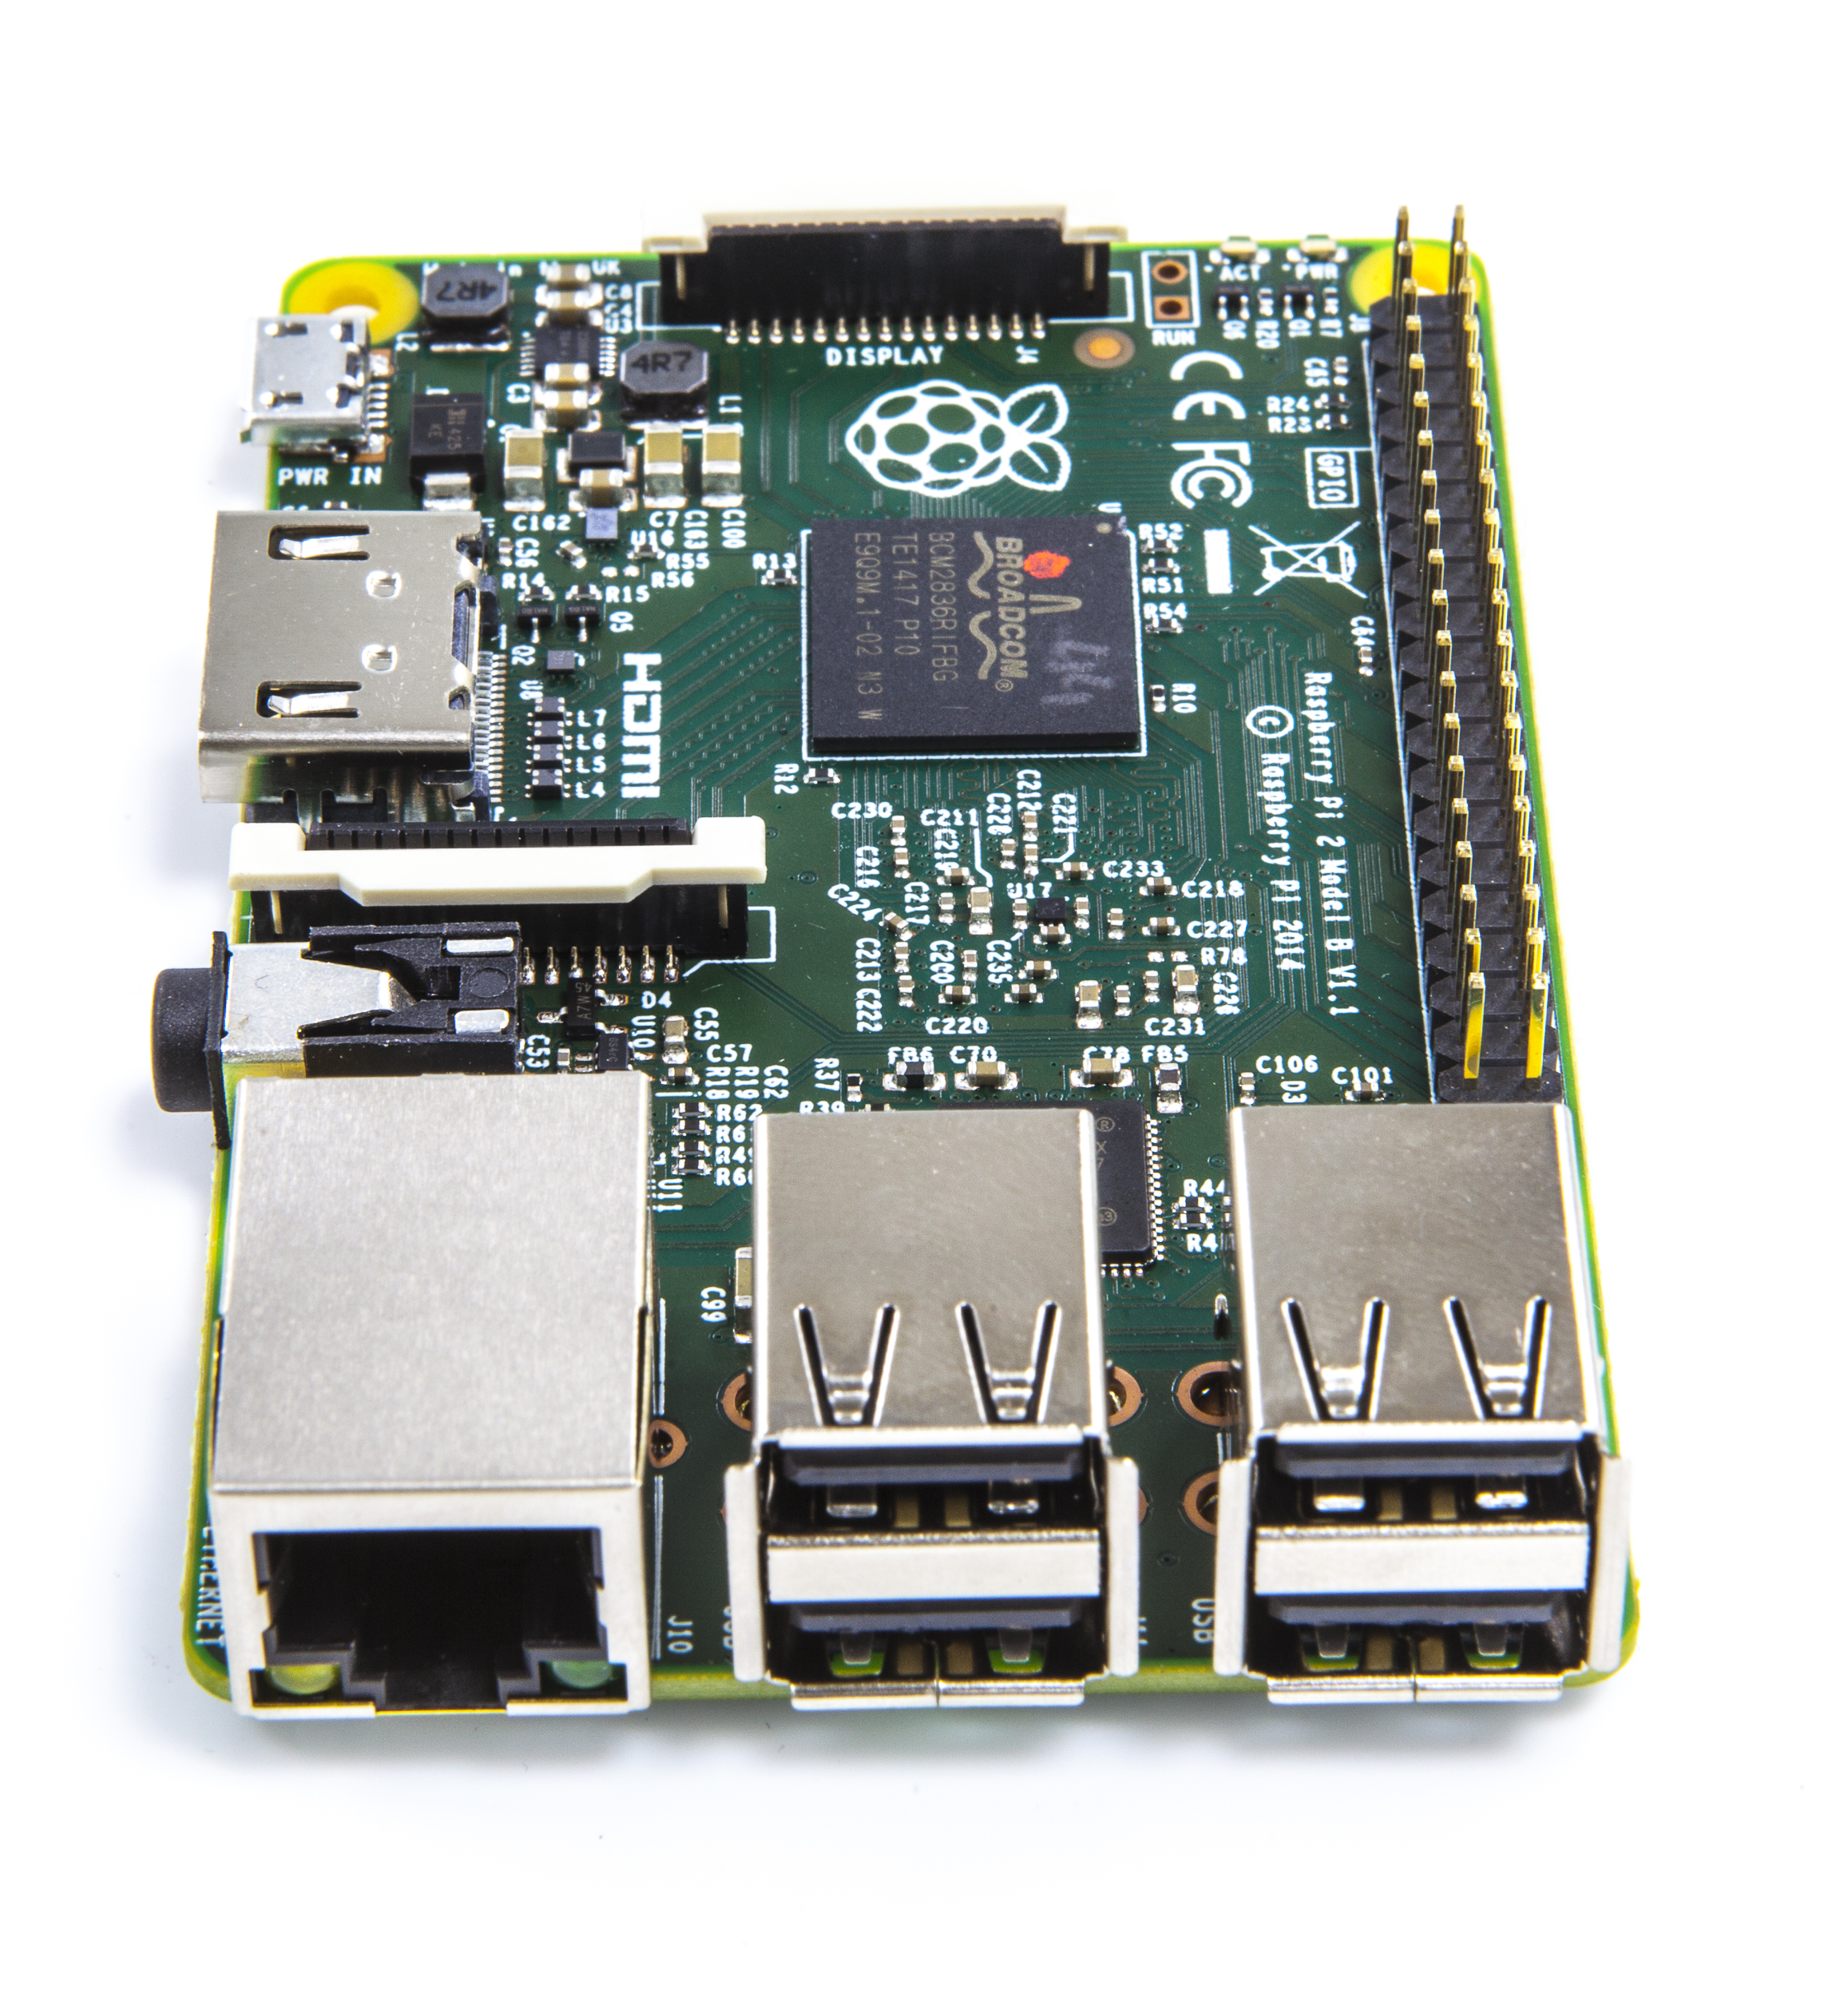 Buy a Raspberry Pi 2 Model B – Raspberry Pi